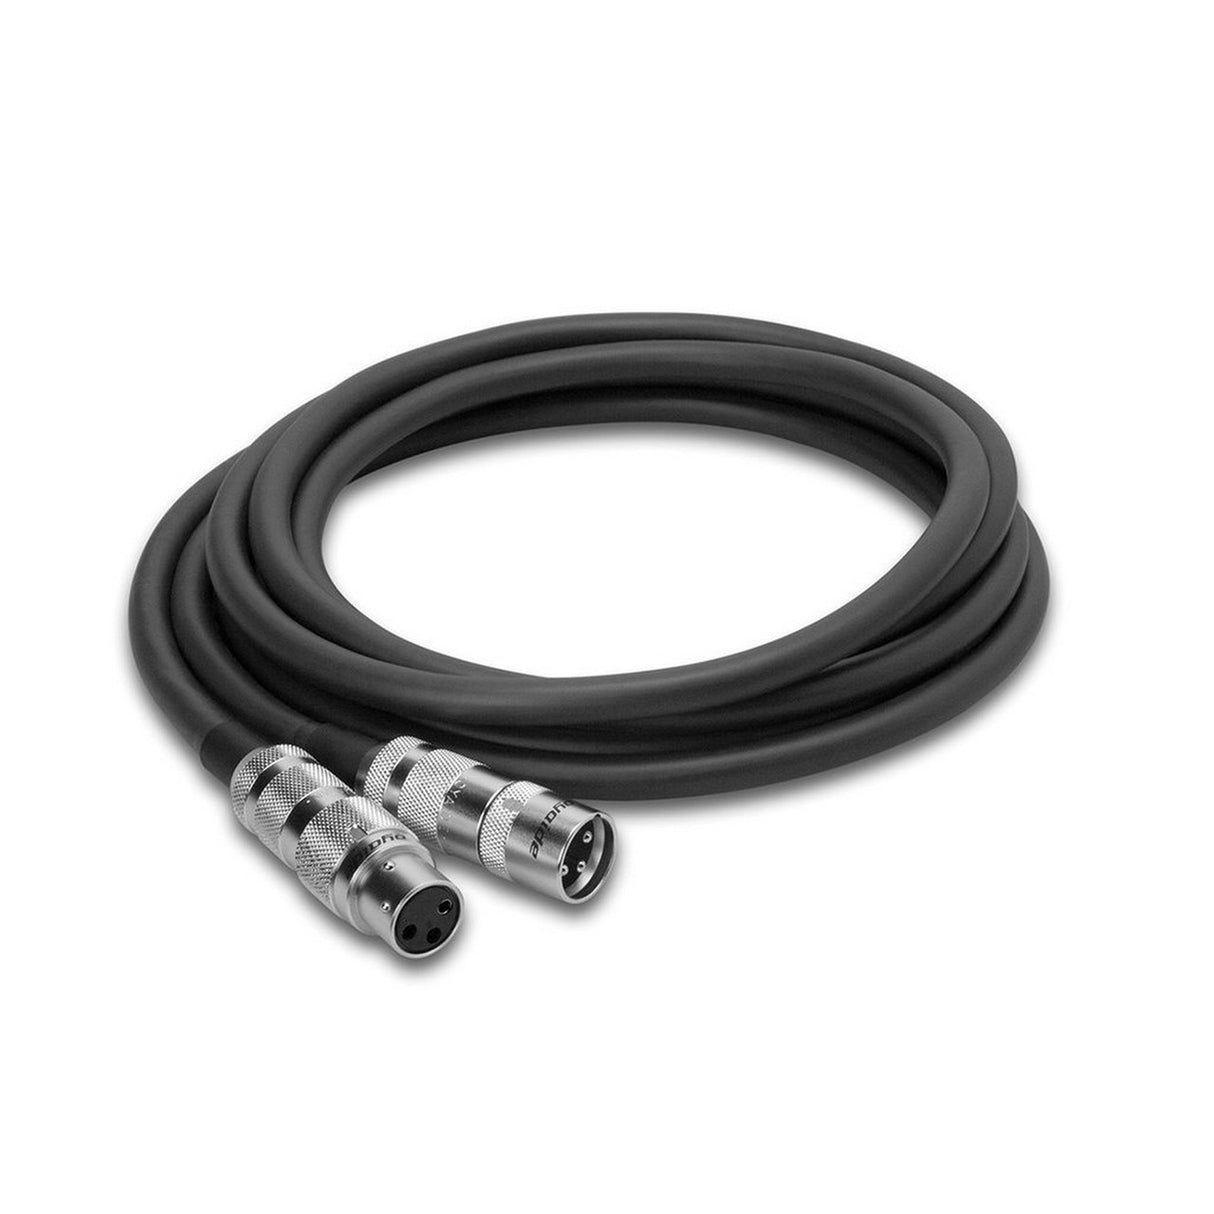 Zaolla ZMC-103 | 3 Foot Mic Oyaide XLR3F to XLR3M Cable